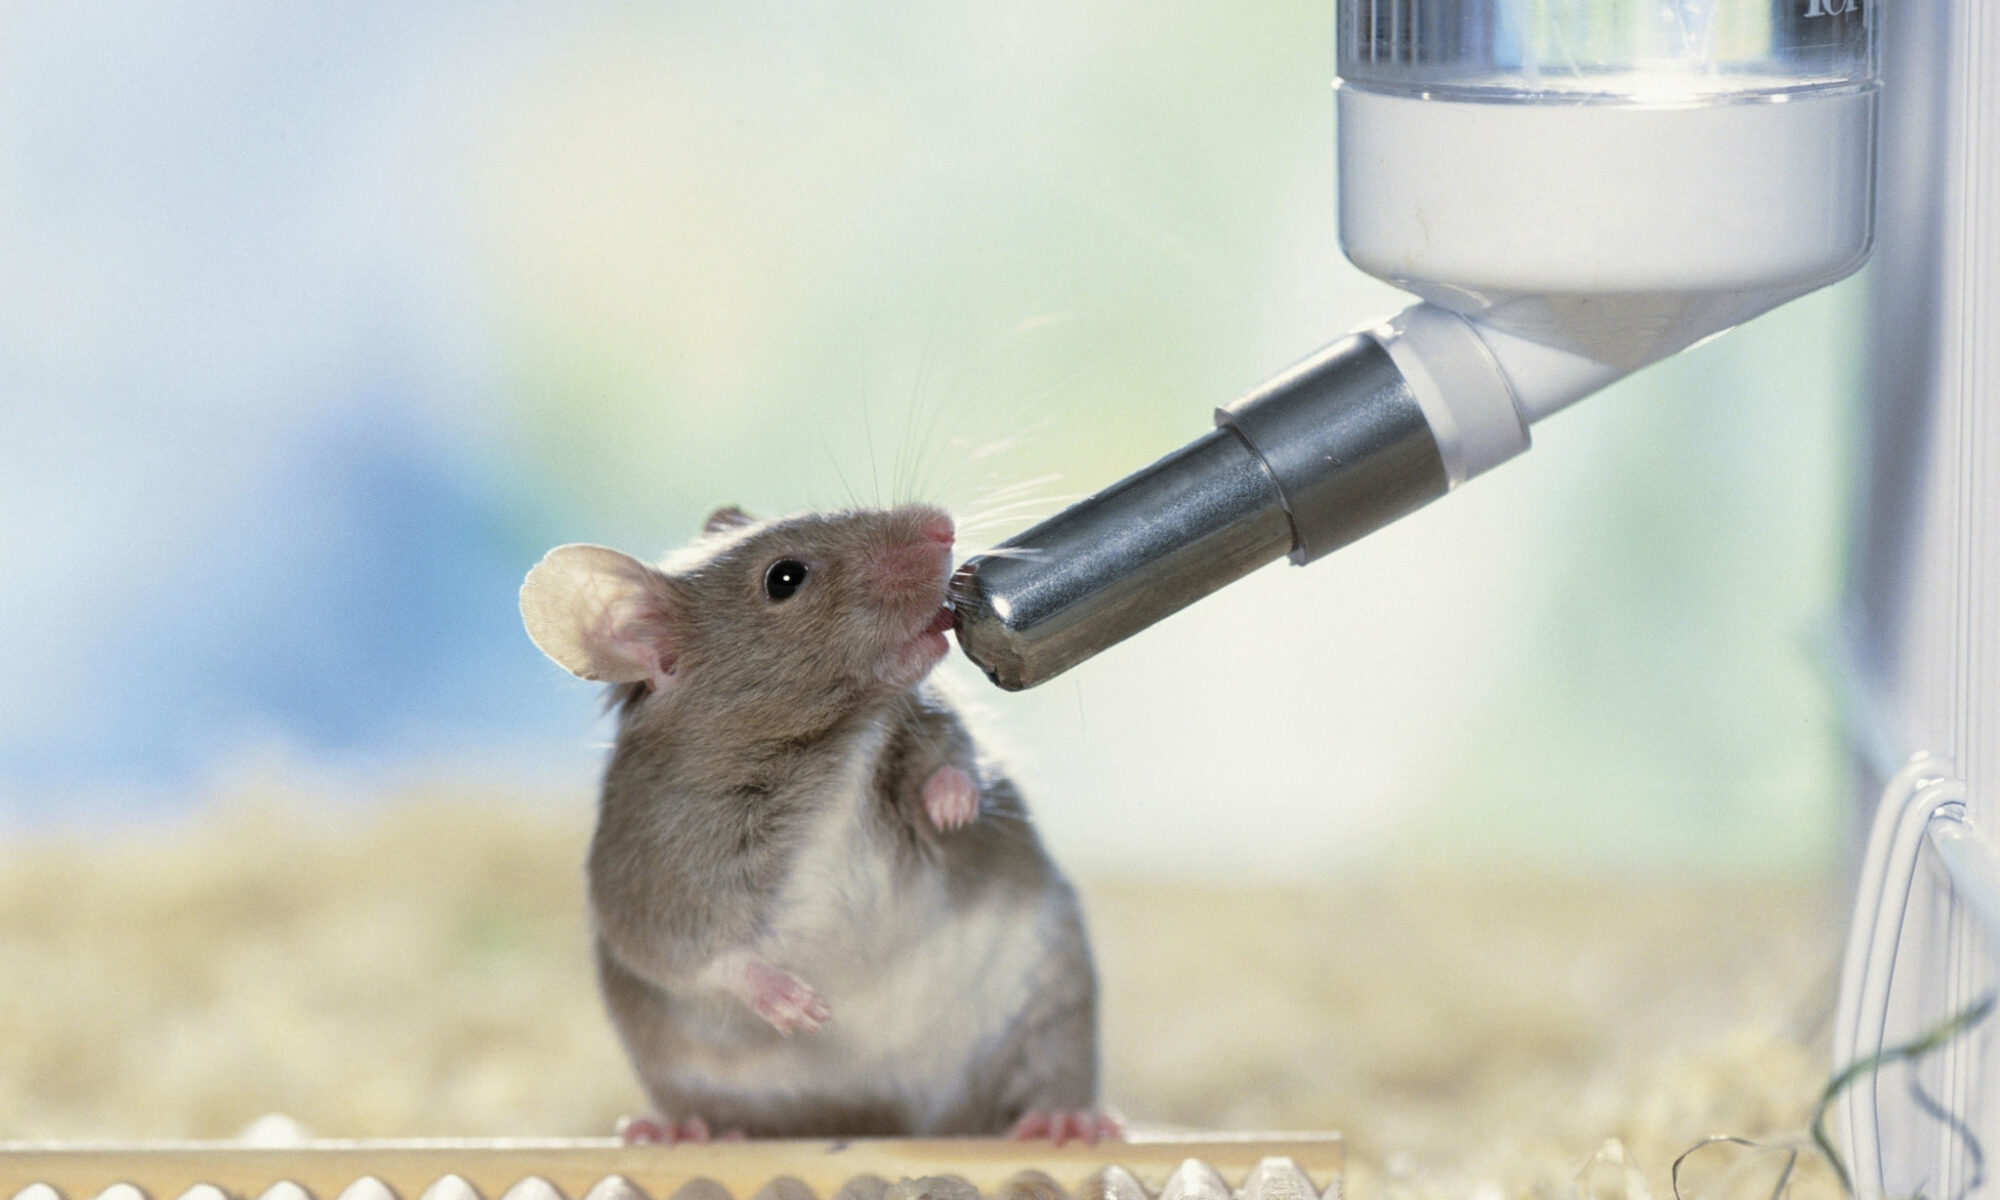 El cerebro de ratones y primates usa el mismo circuito para controlar lengua y extremidades